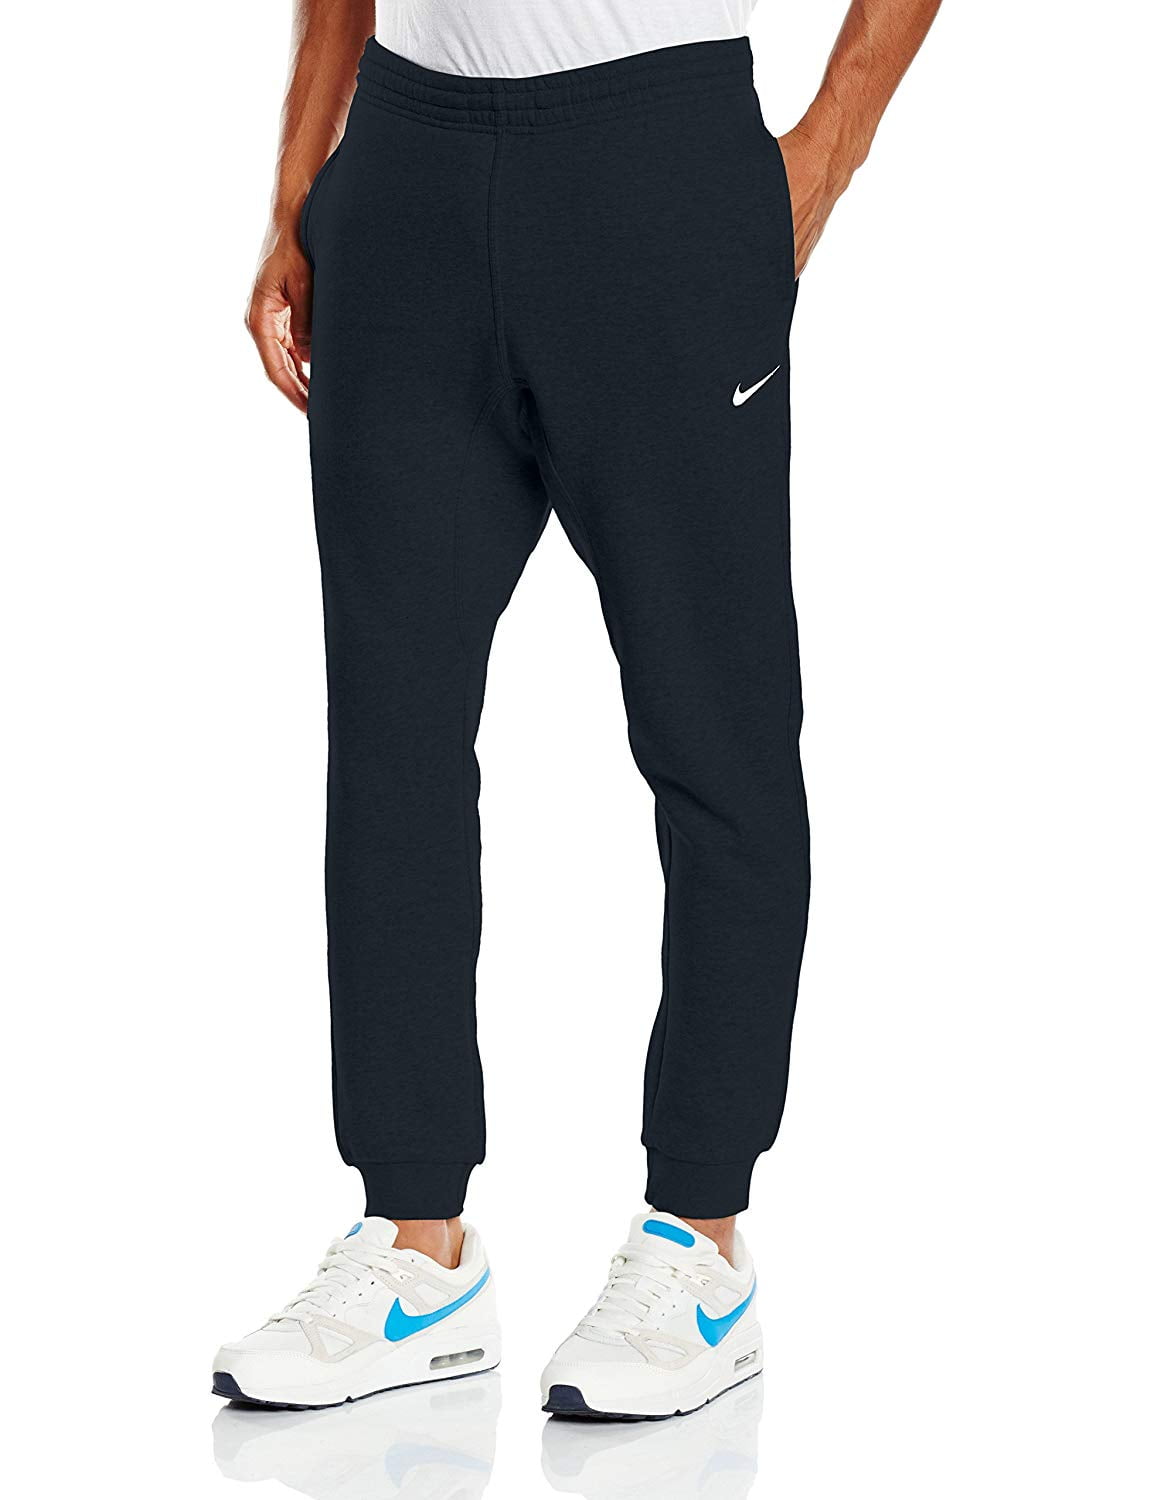 Nike Mens Tapered Fleece Active Pants - Walmart.com